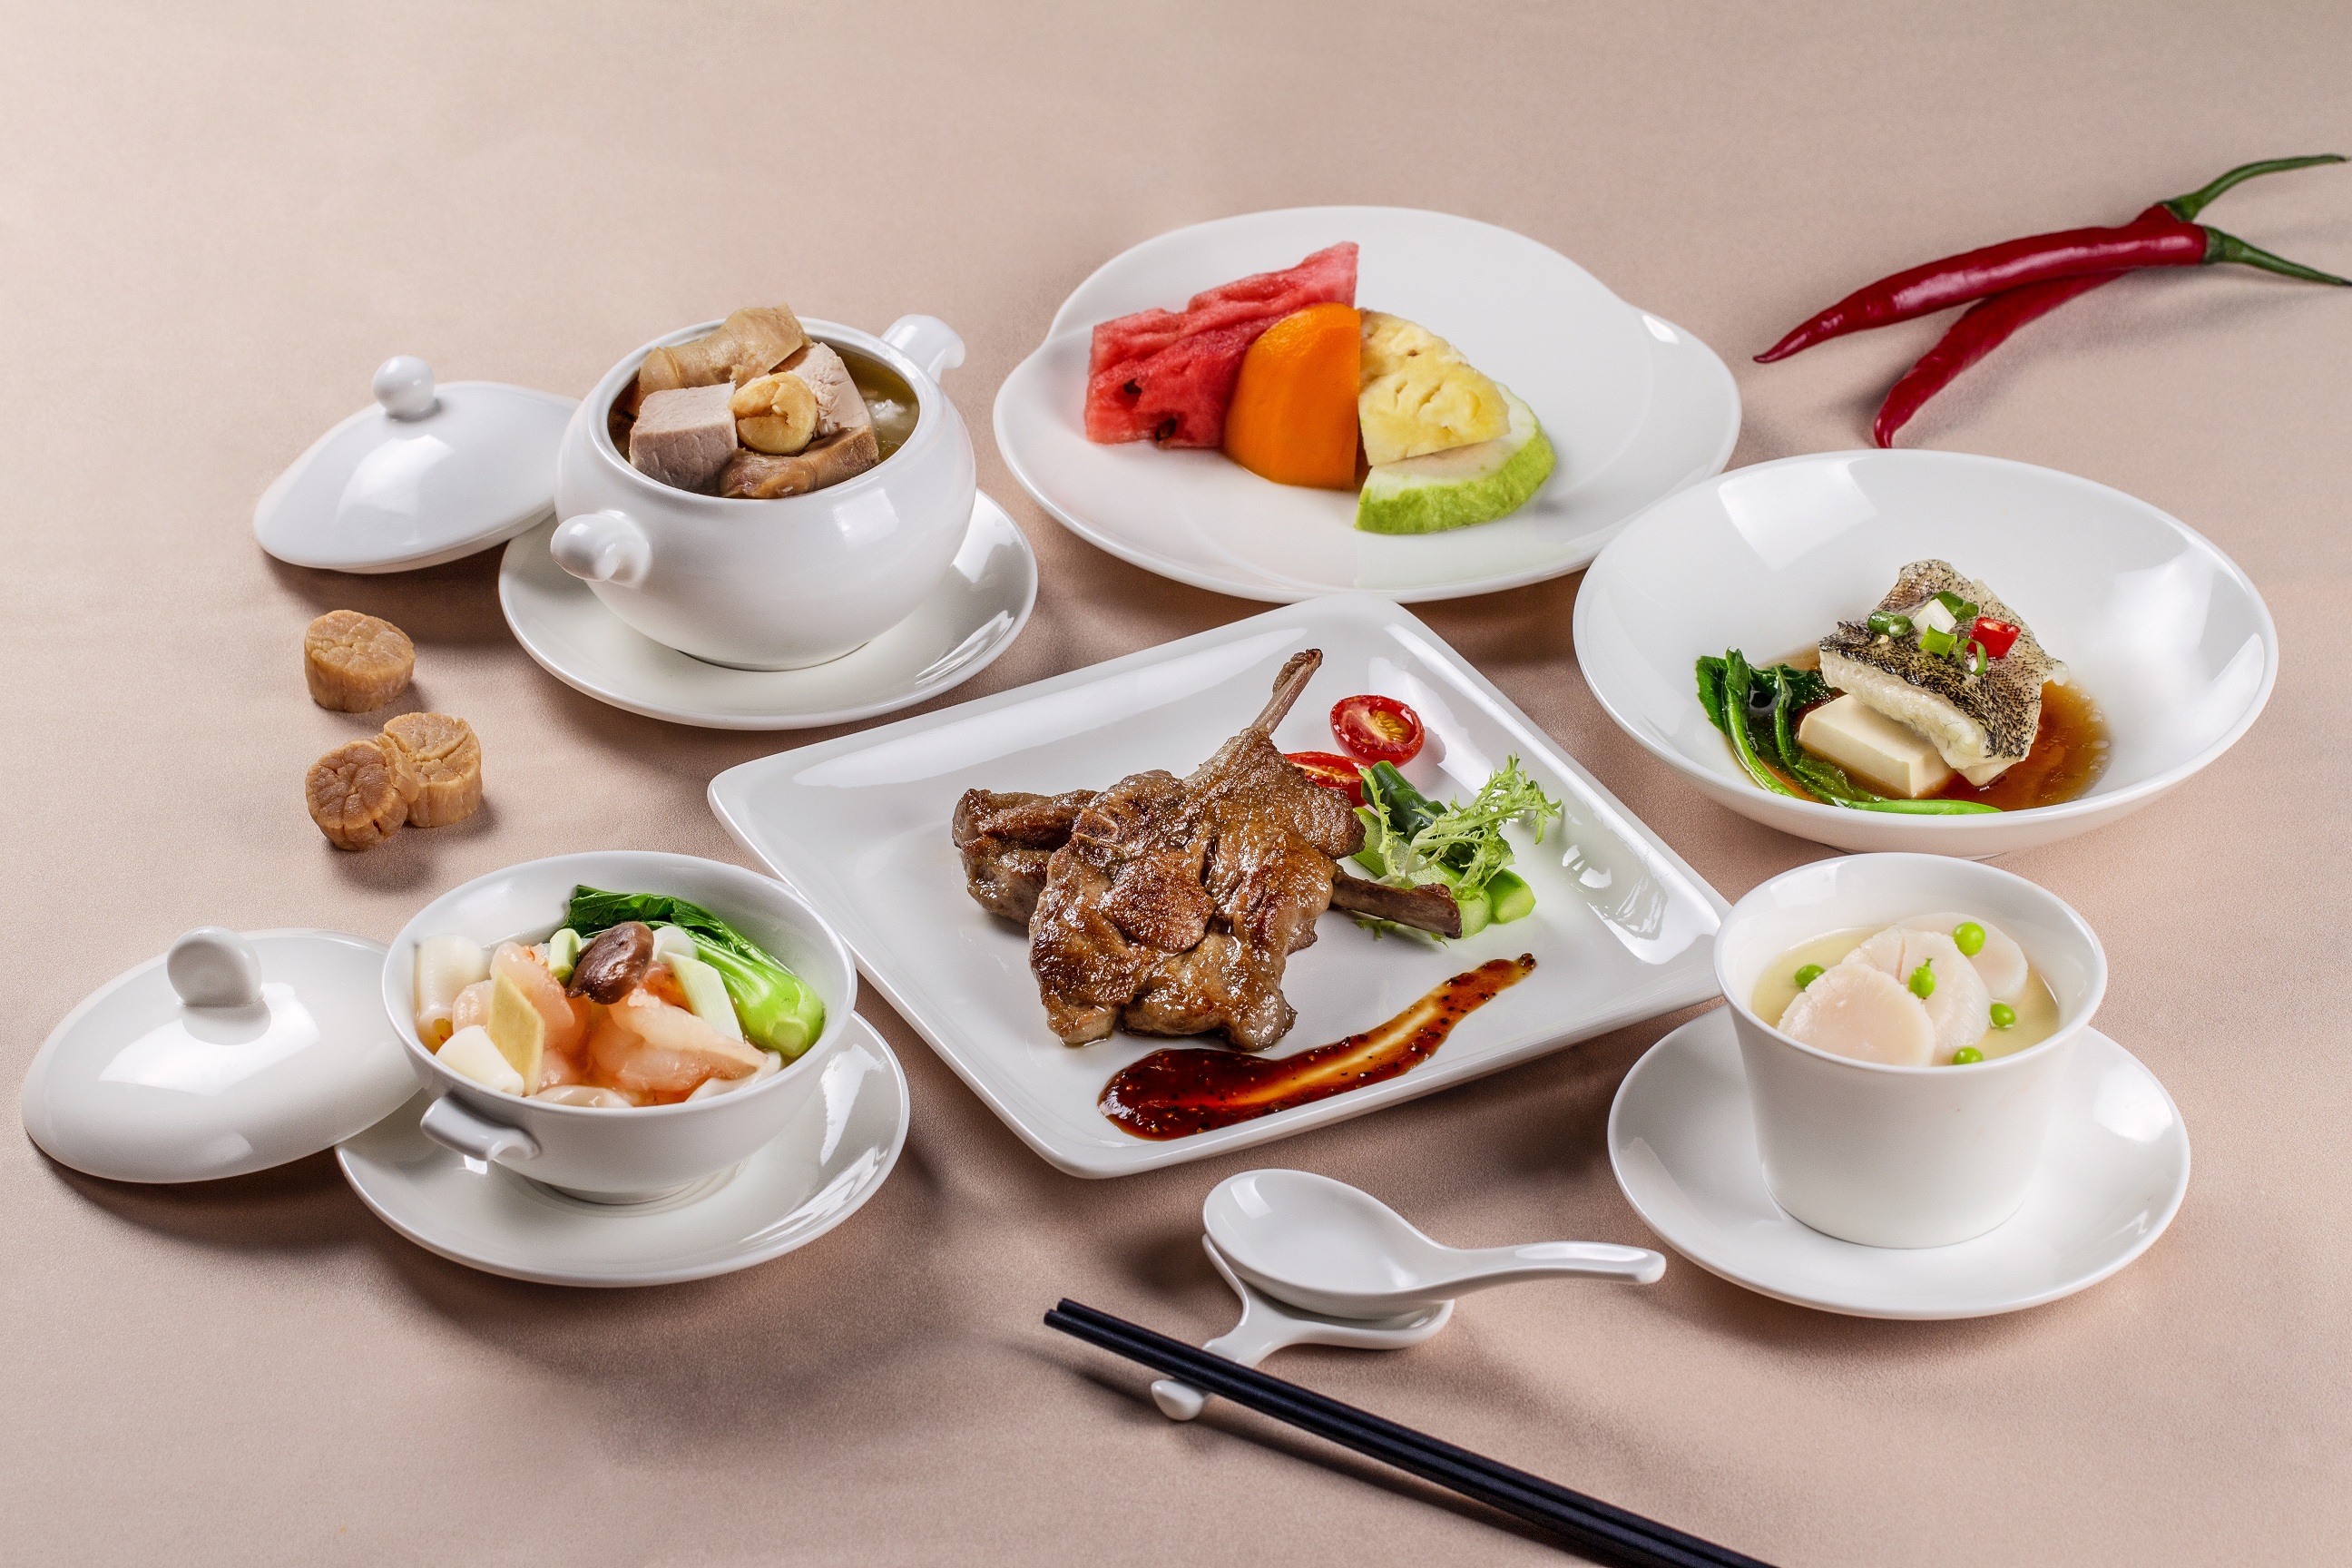 彩豐樓_特色套餐 
正宗粵式料理以食材的原始風味為出發，加上主廚巧思，運用在地食材，道道都展現粵菜的精髓文化與台南的熱情好客。
